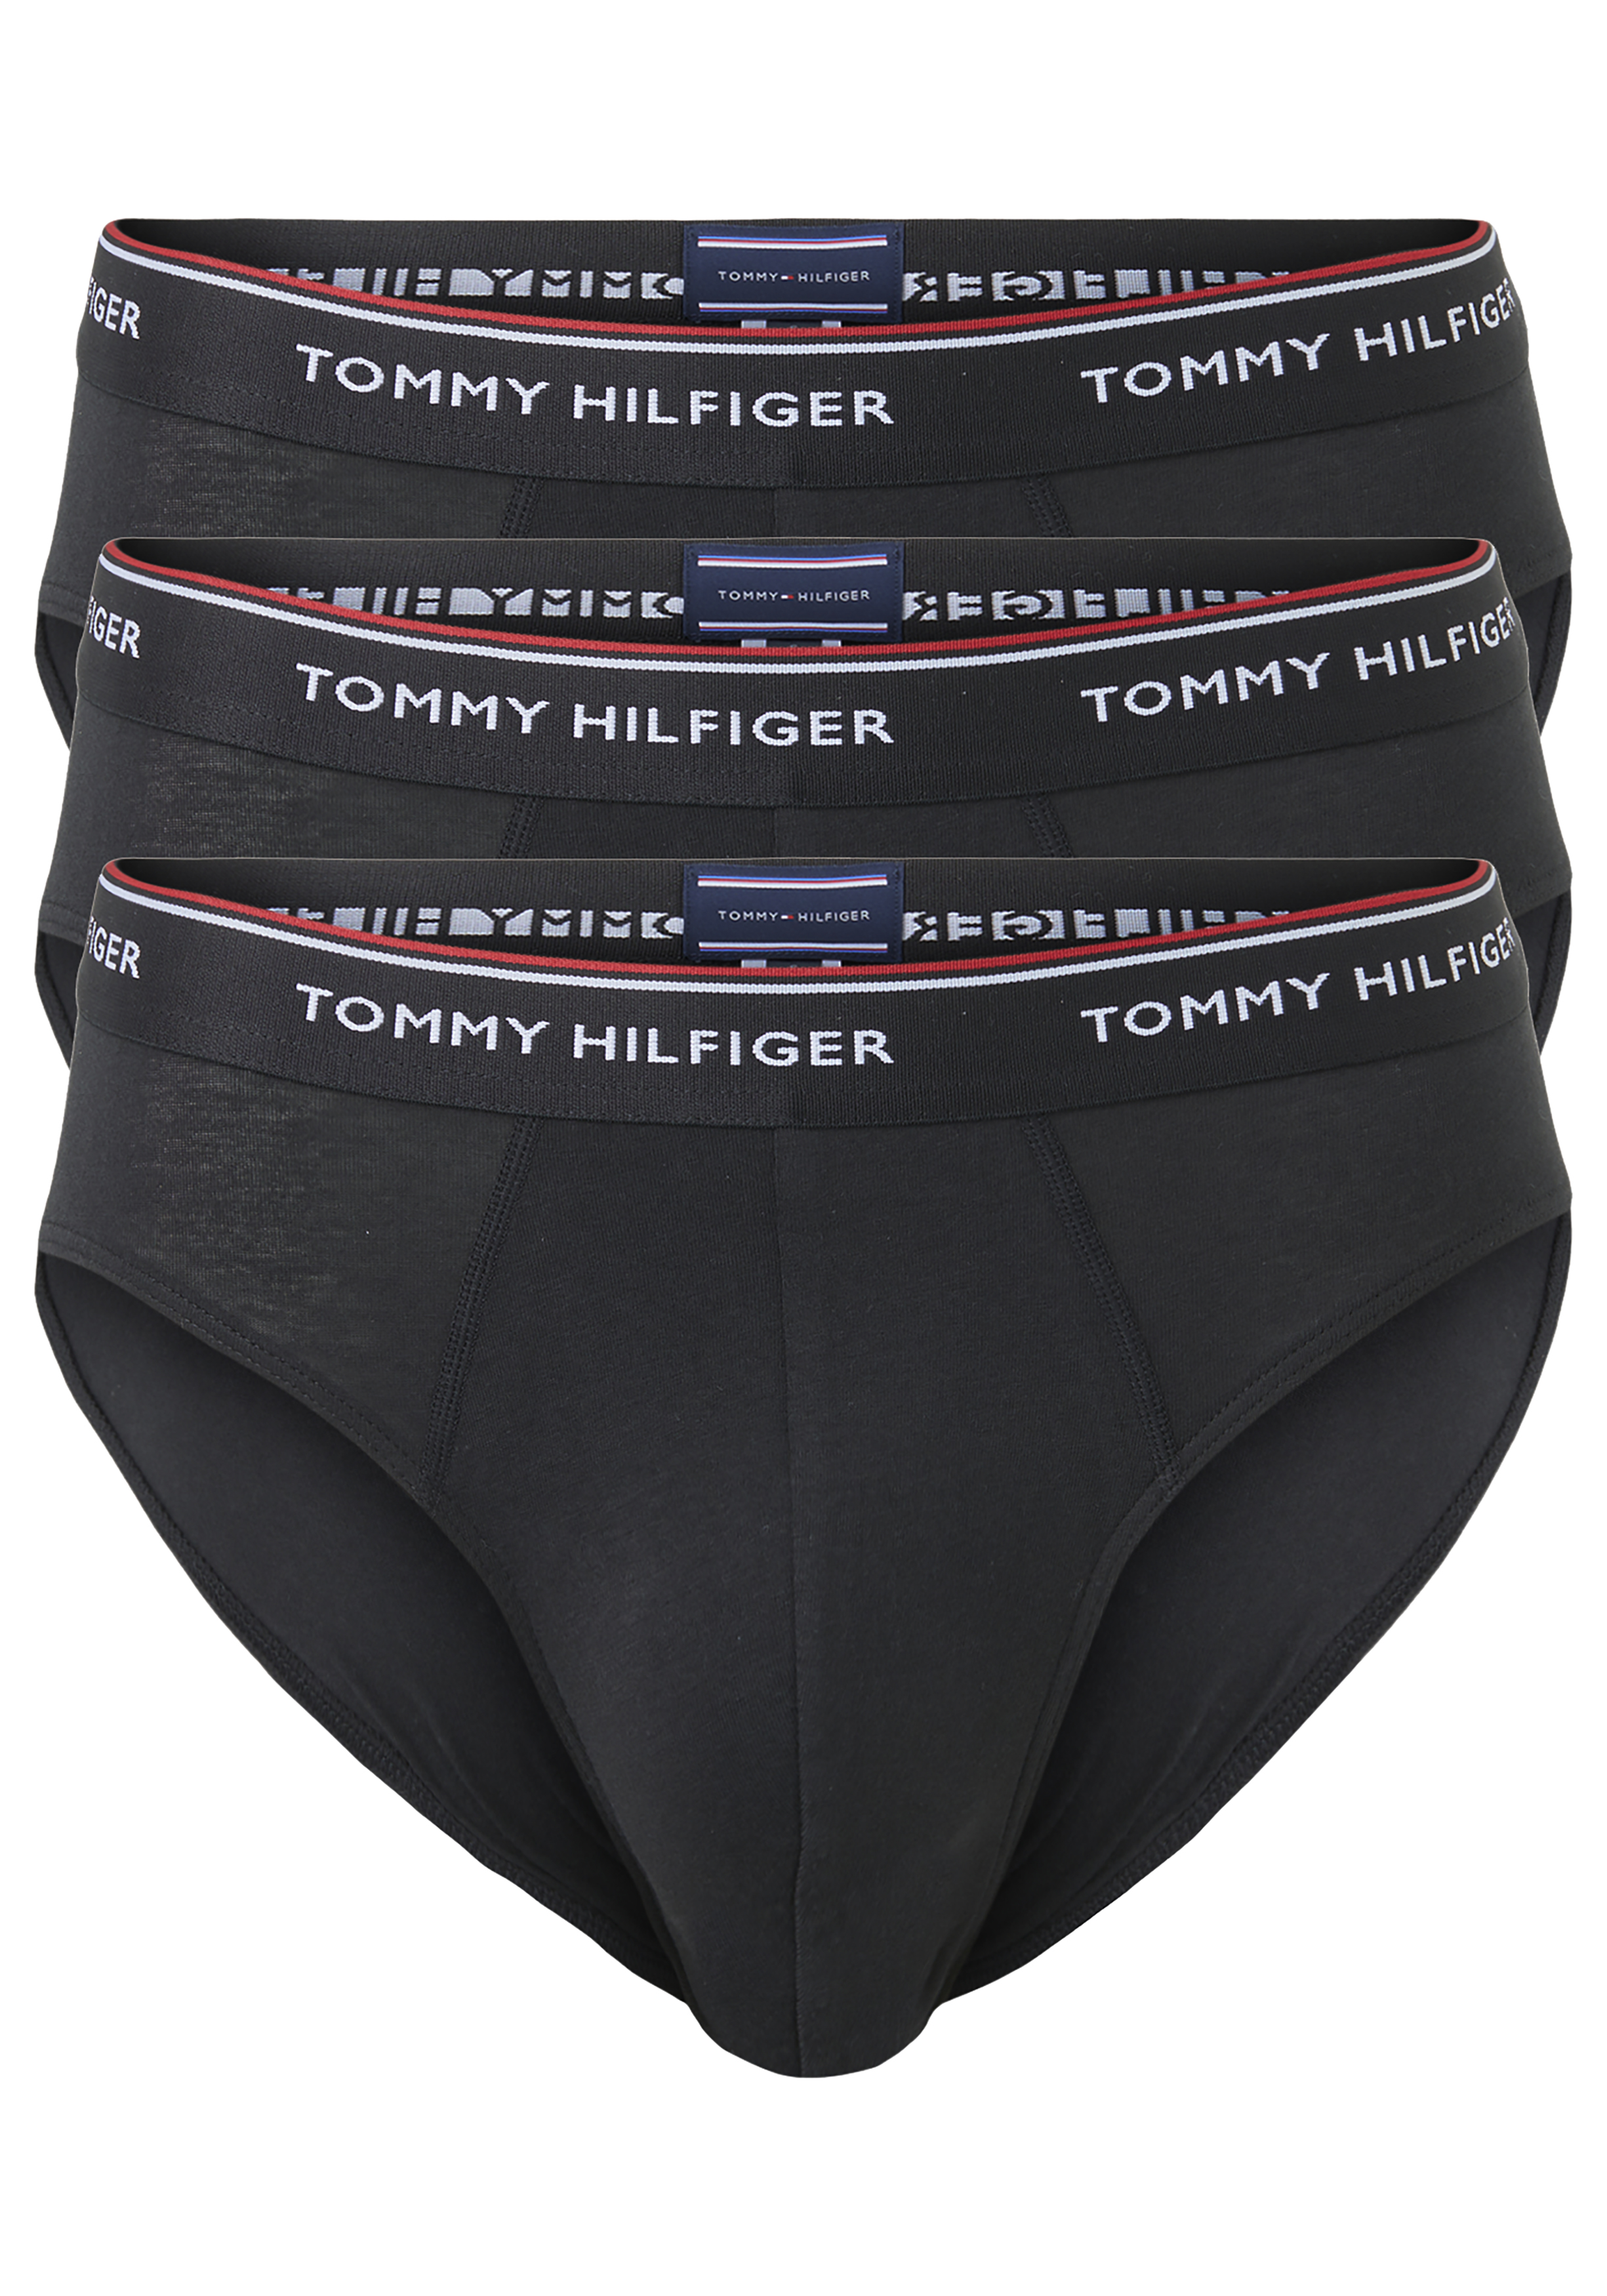 Tommy Hilfiger slips (3-pack), heren slips zonder gulp, zwart